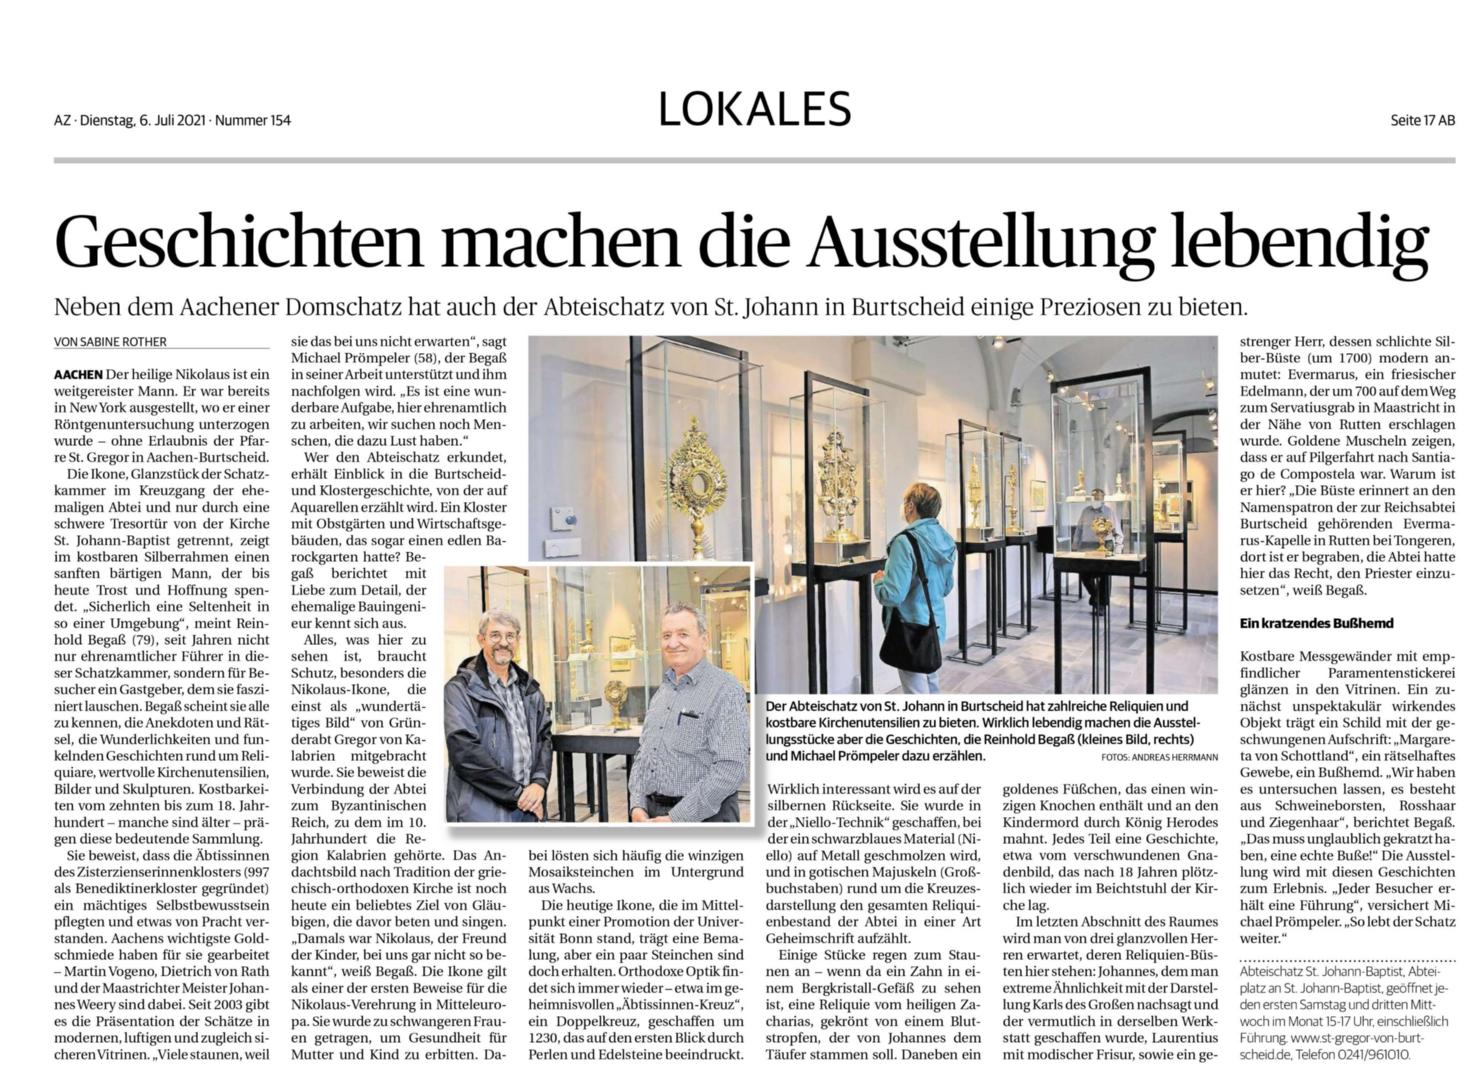 Aachener Zeitung 6.7.2021 (c) Aachener Zeitung